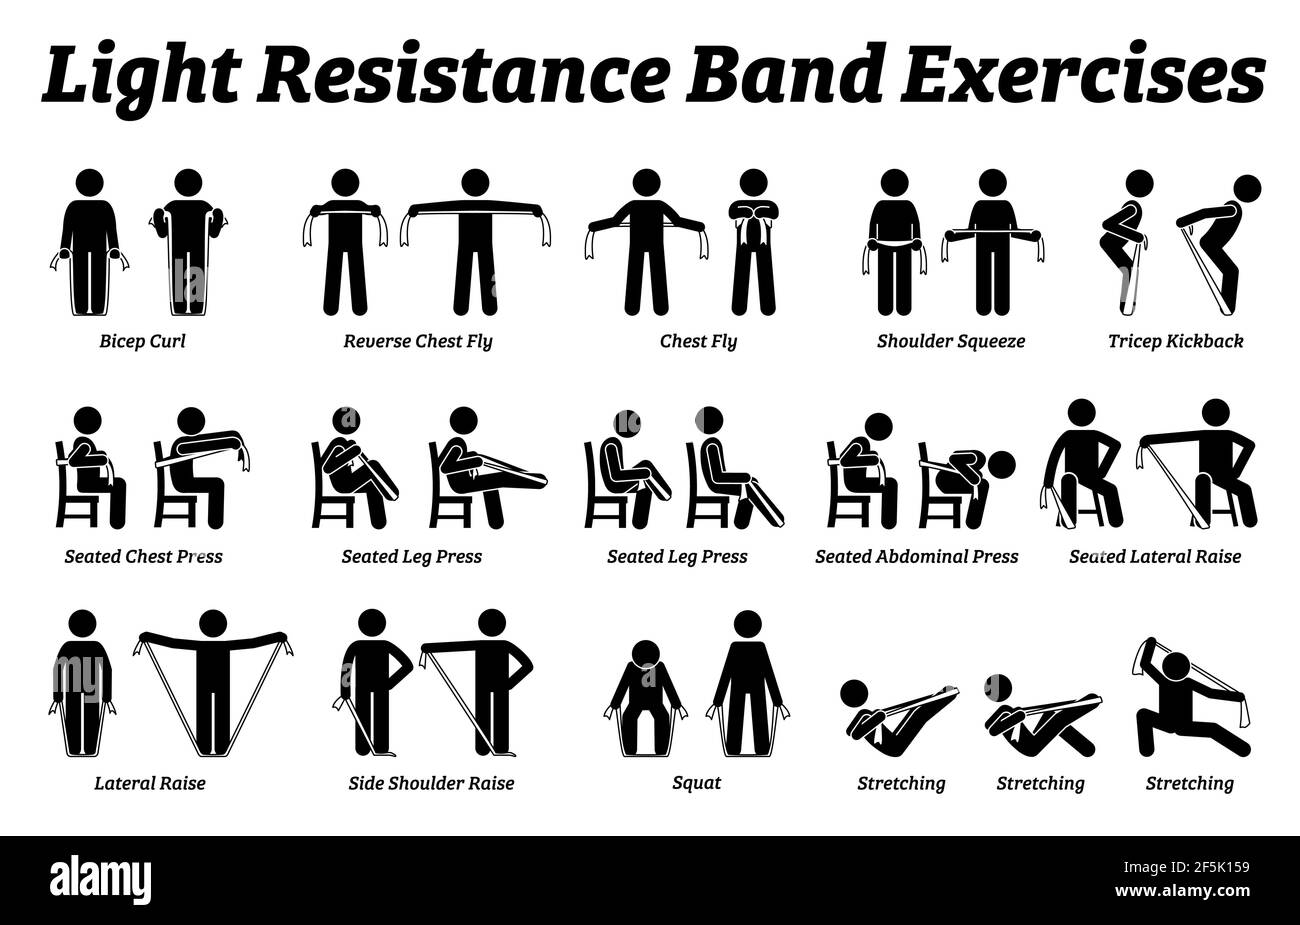 Light Resistance Band Übungen und Stretch-Workout-Techniken in Schritt für Schritt. Vektor-Illustrationen von Dehnübungen Posen, Haltungen und Meth Stock Vektor